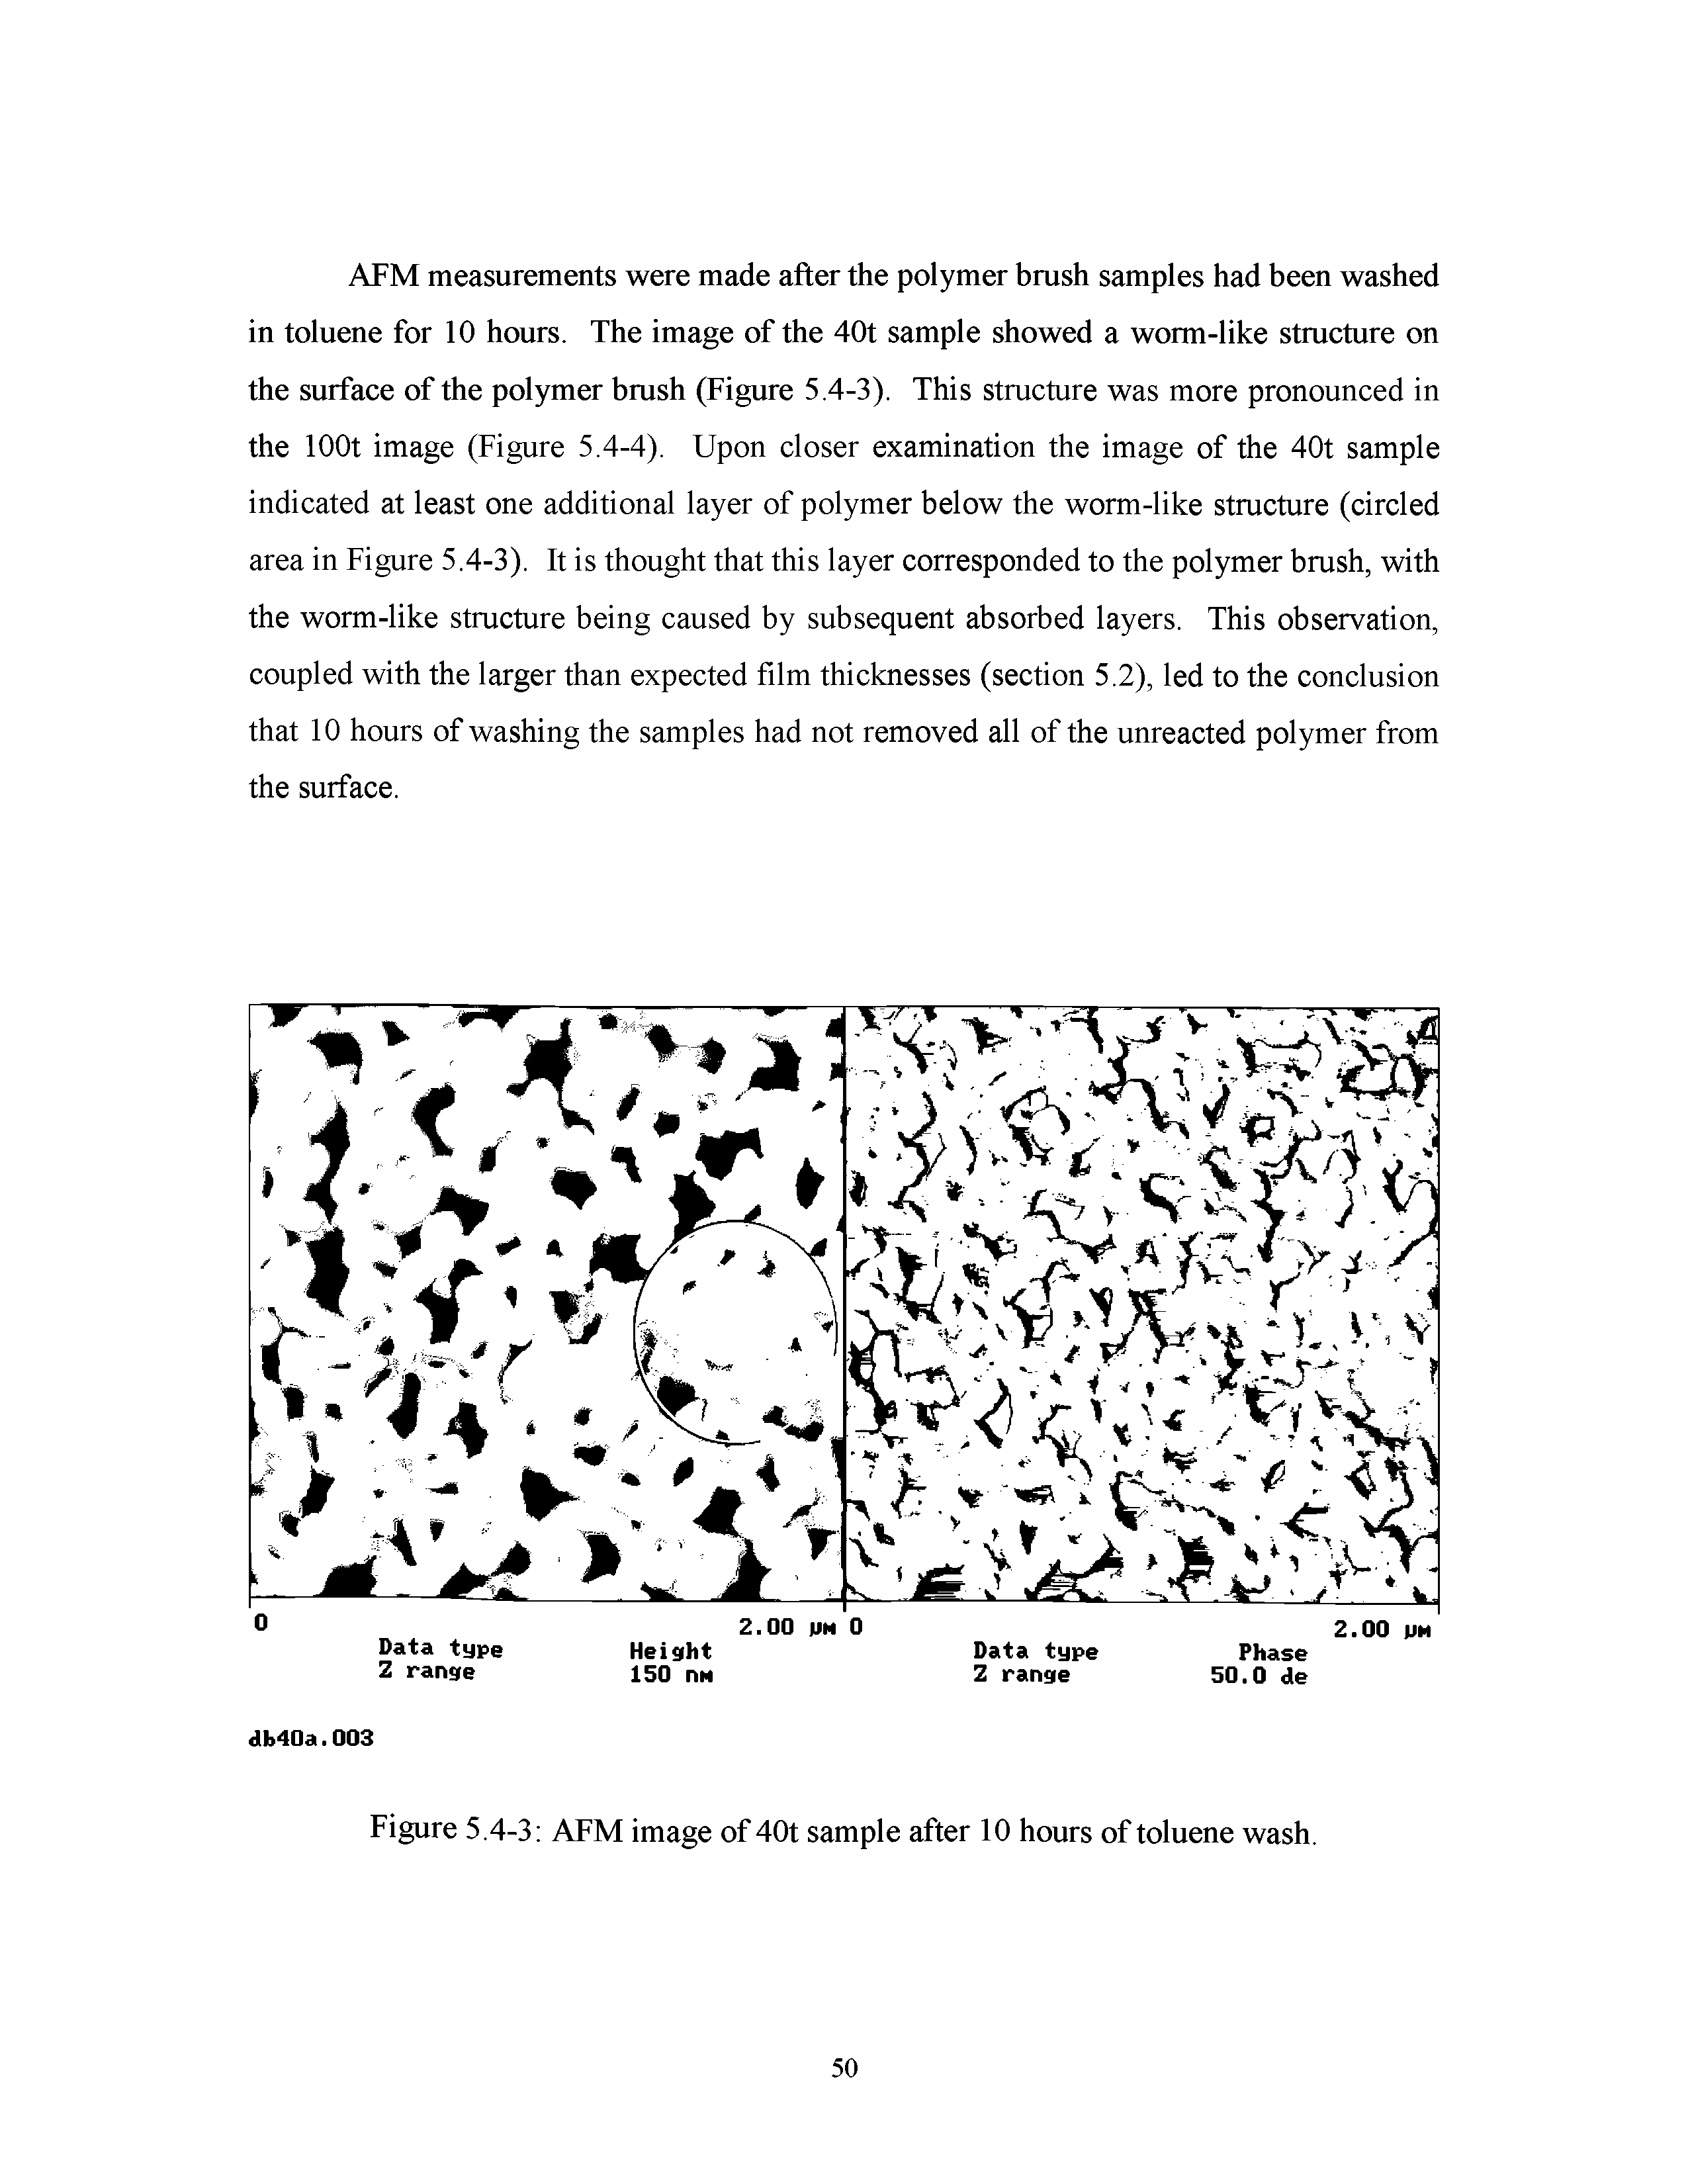 Figure 5.4-3 AFM image of 40t sample after 10 hours of toluene wash.